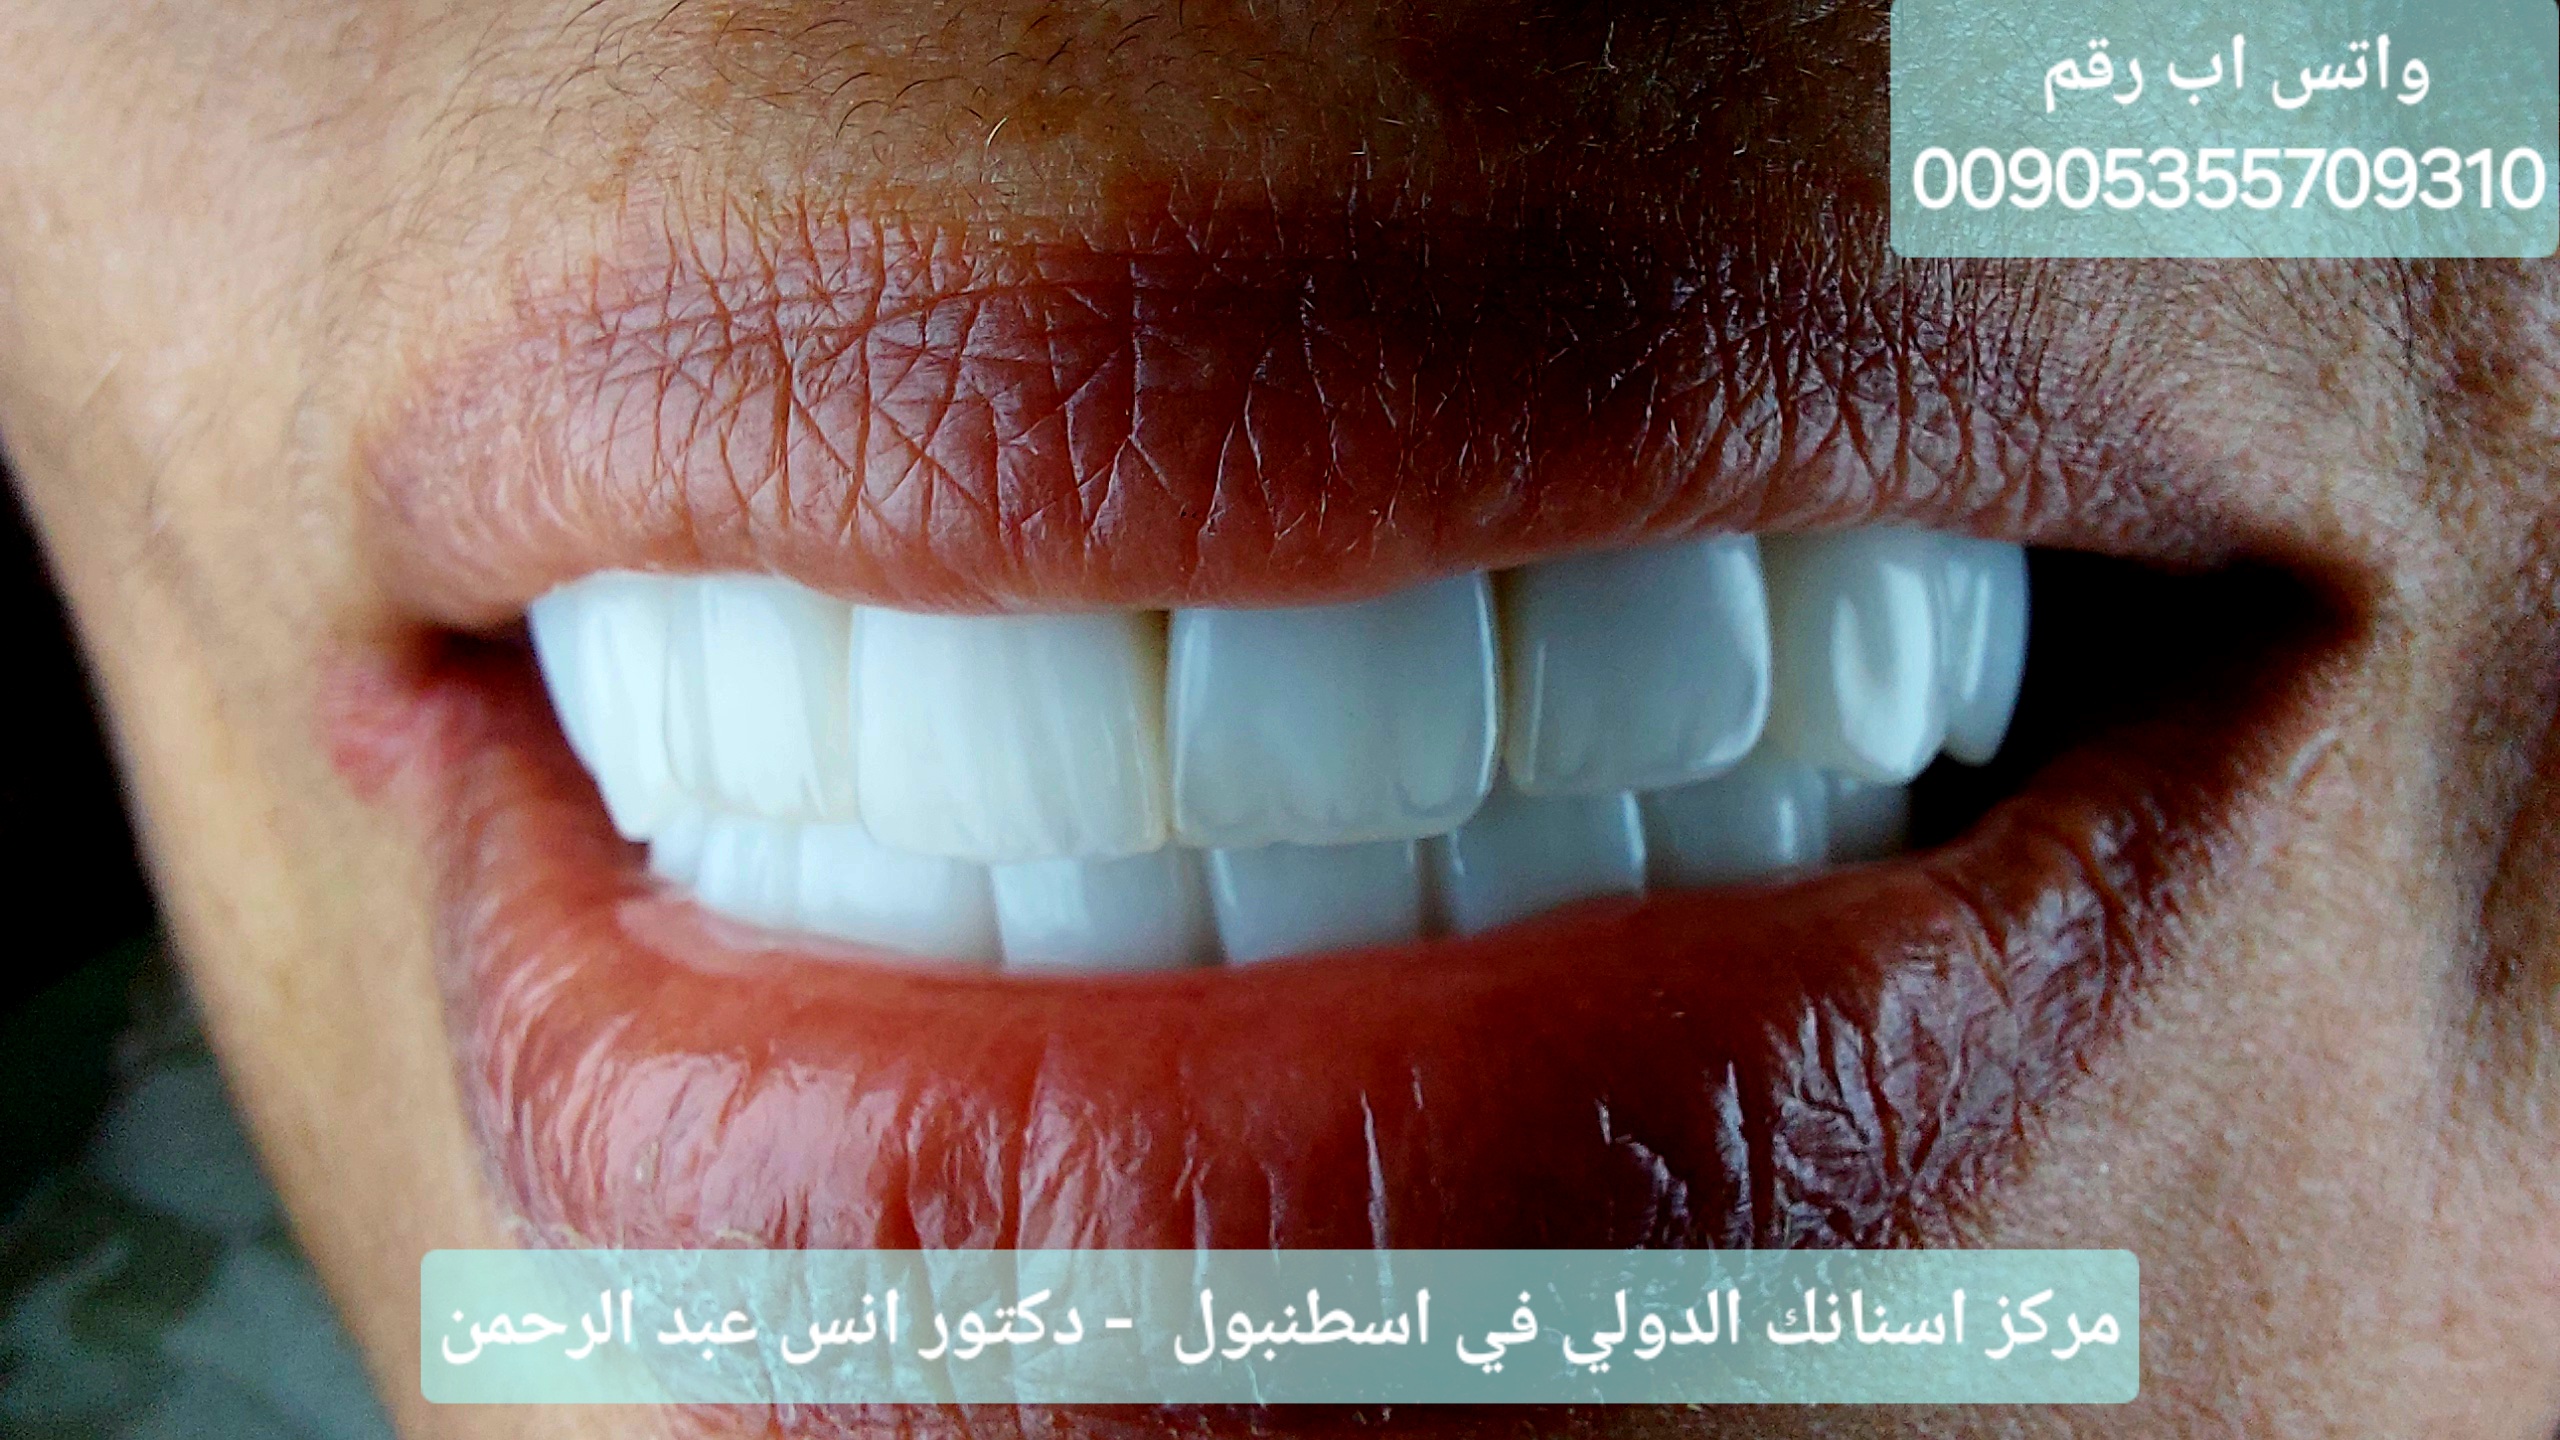 تركيب إبتسامة هوليود رائعة لمغربية بعد زراعة زرعات TBR السويسرية